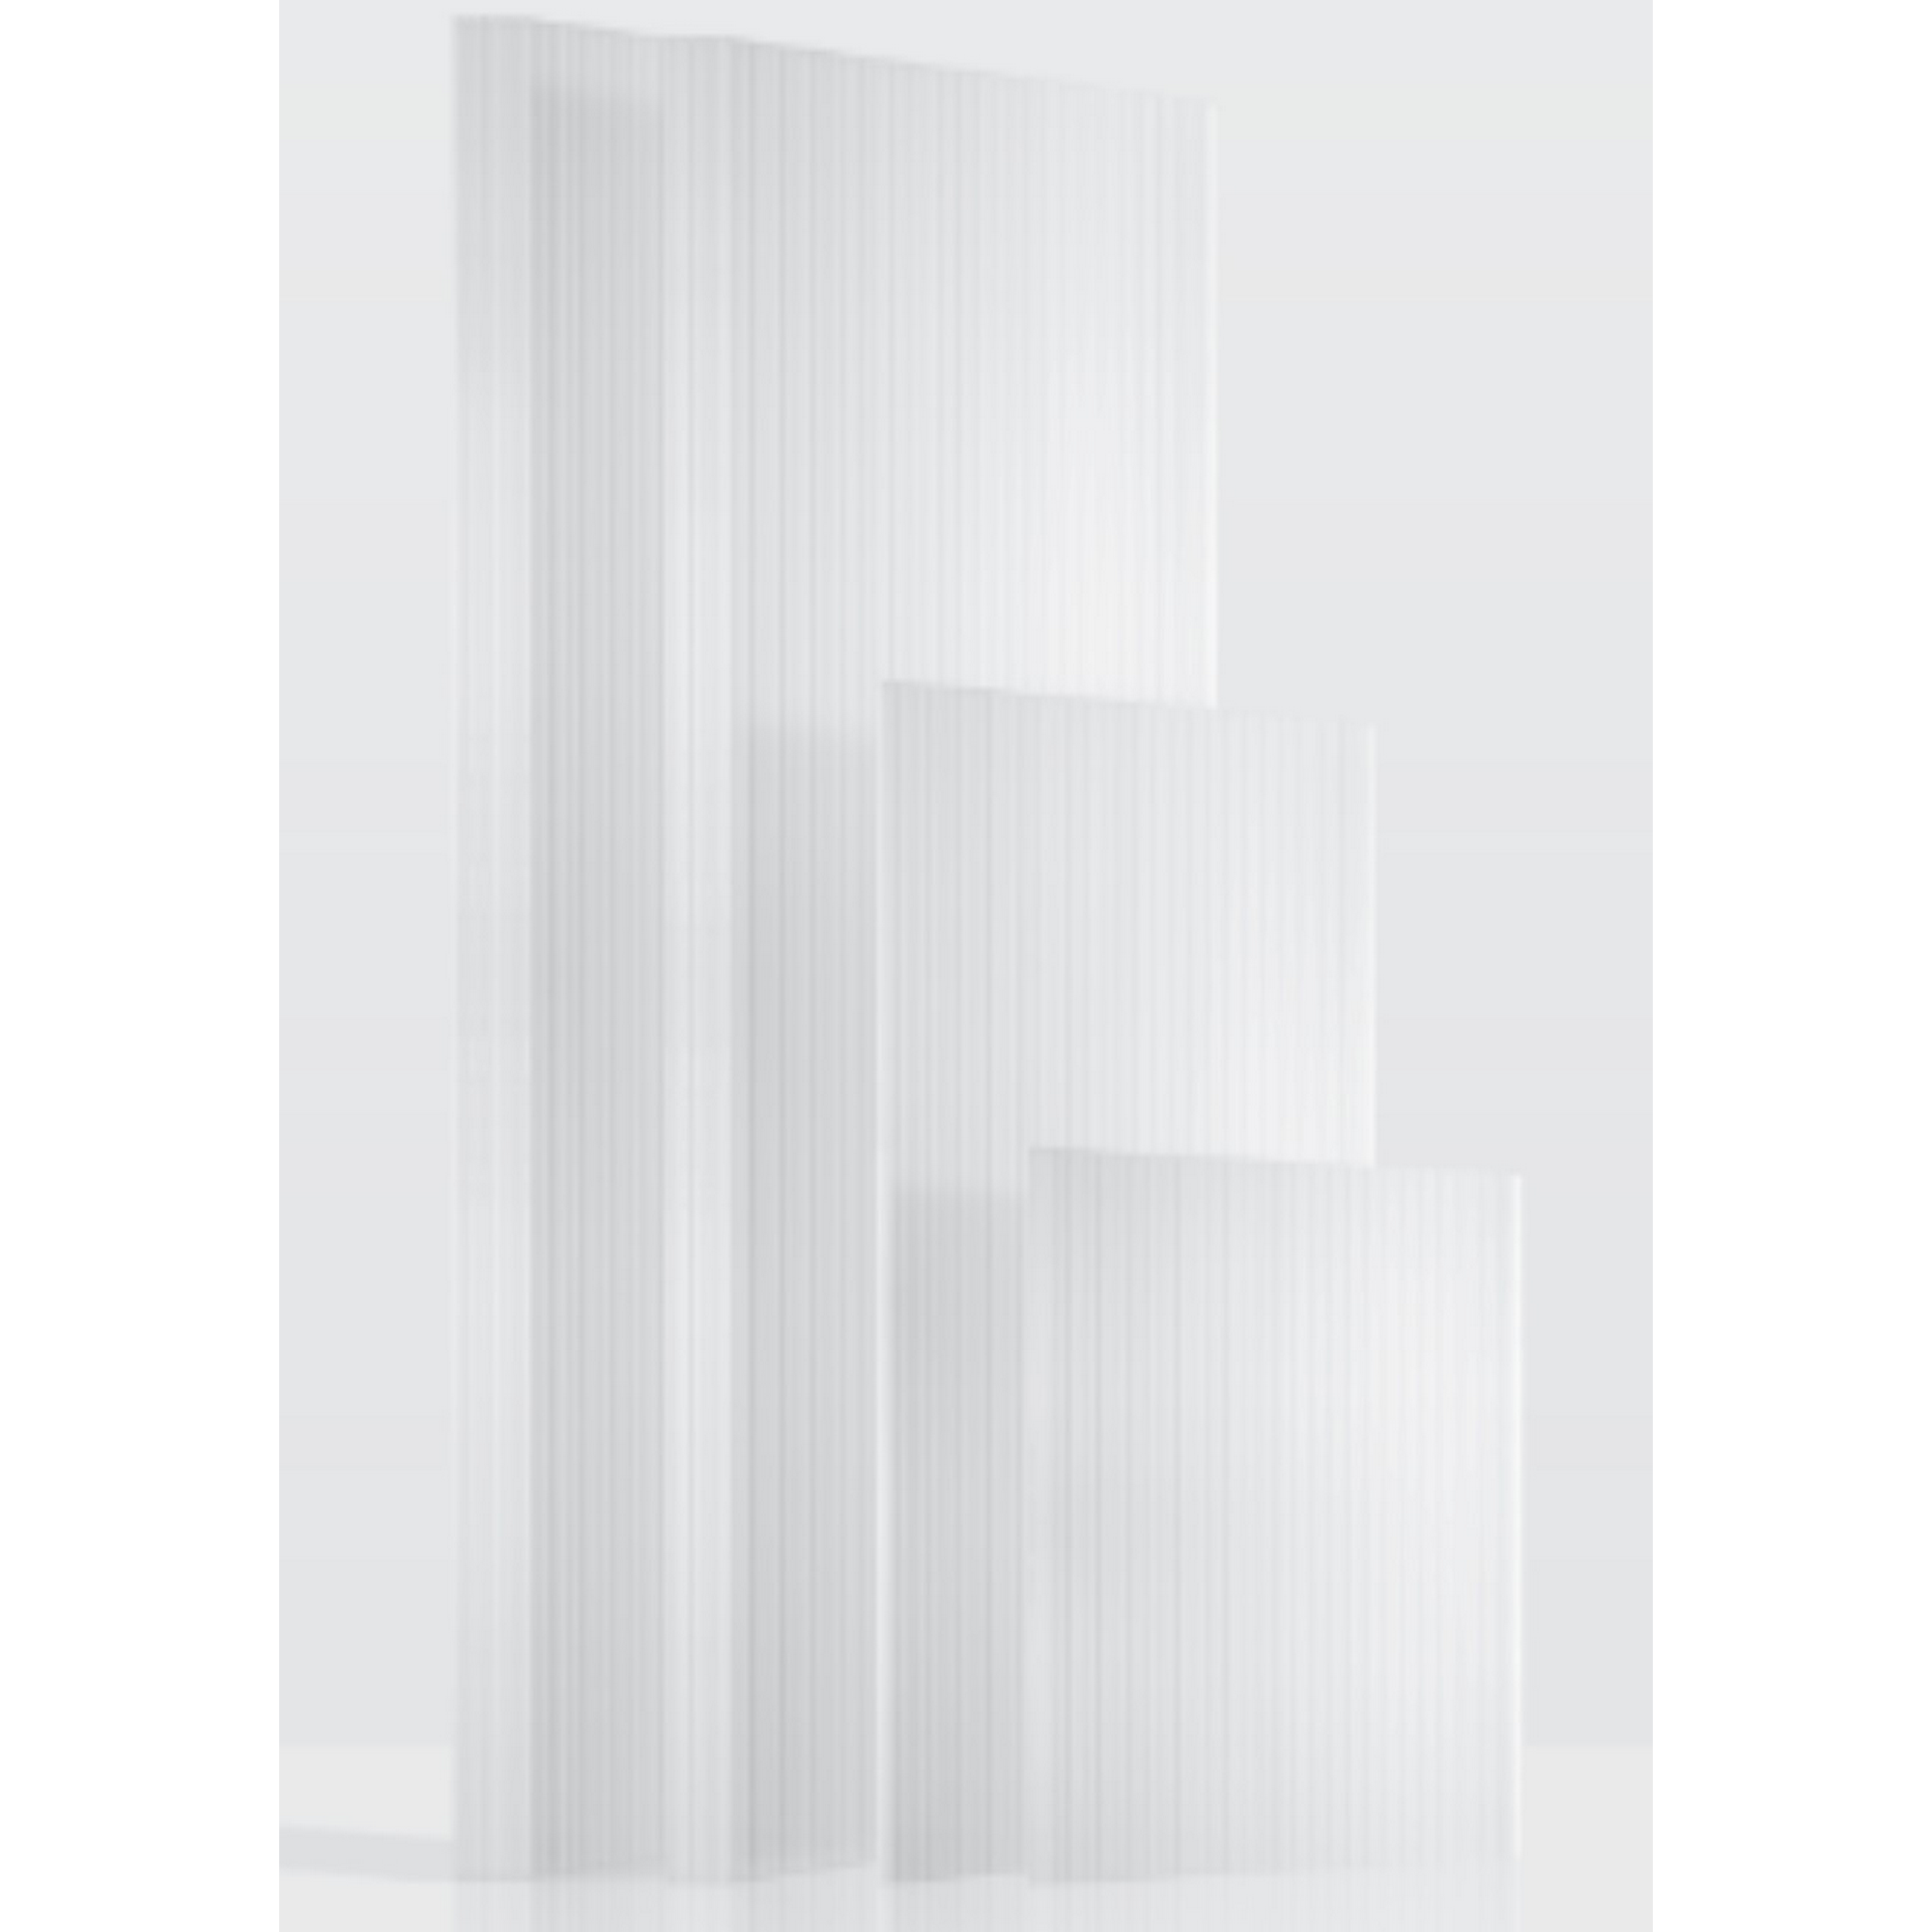 Hohlkammerplatten Gewächshaus 'Ergänzungsset 5' transparent 6 mm, 13-teilig + product picture